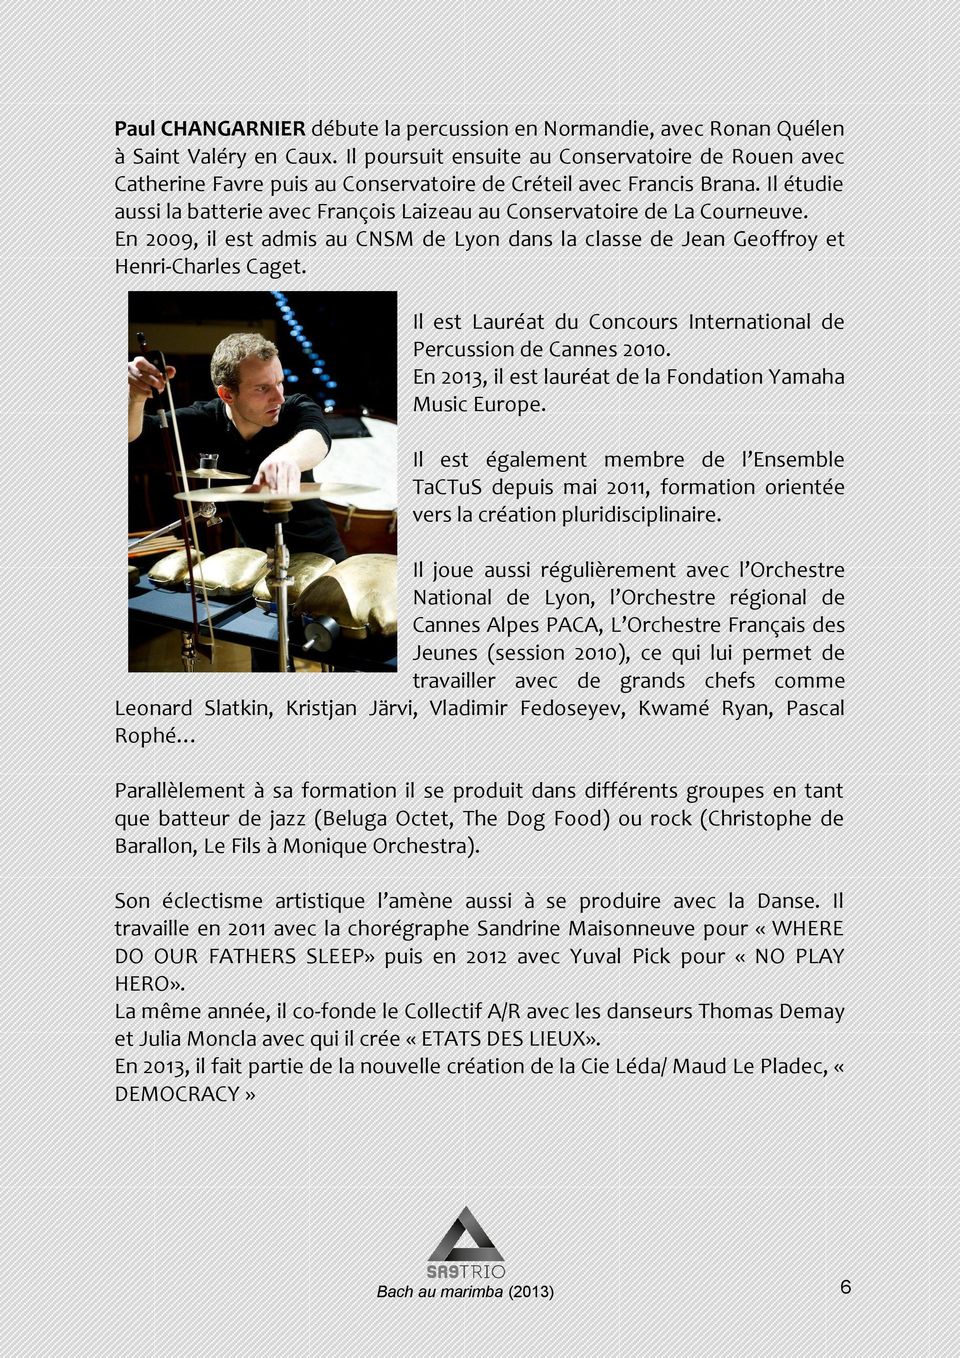 Il étudie aussi la batterie avec François Laizeau au Conservatoire de La Courneuve. En 2009, il est admis au CNSM de Lyon dans la classe de Jean Geoffroy et Henri-Charles Caget.